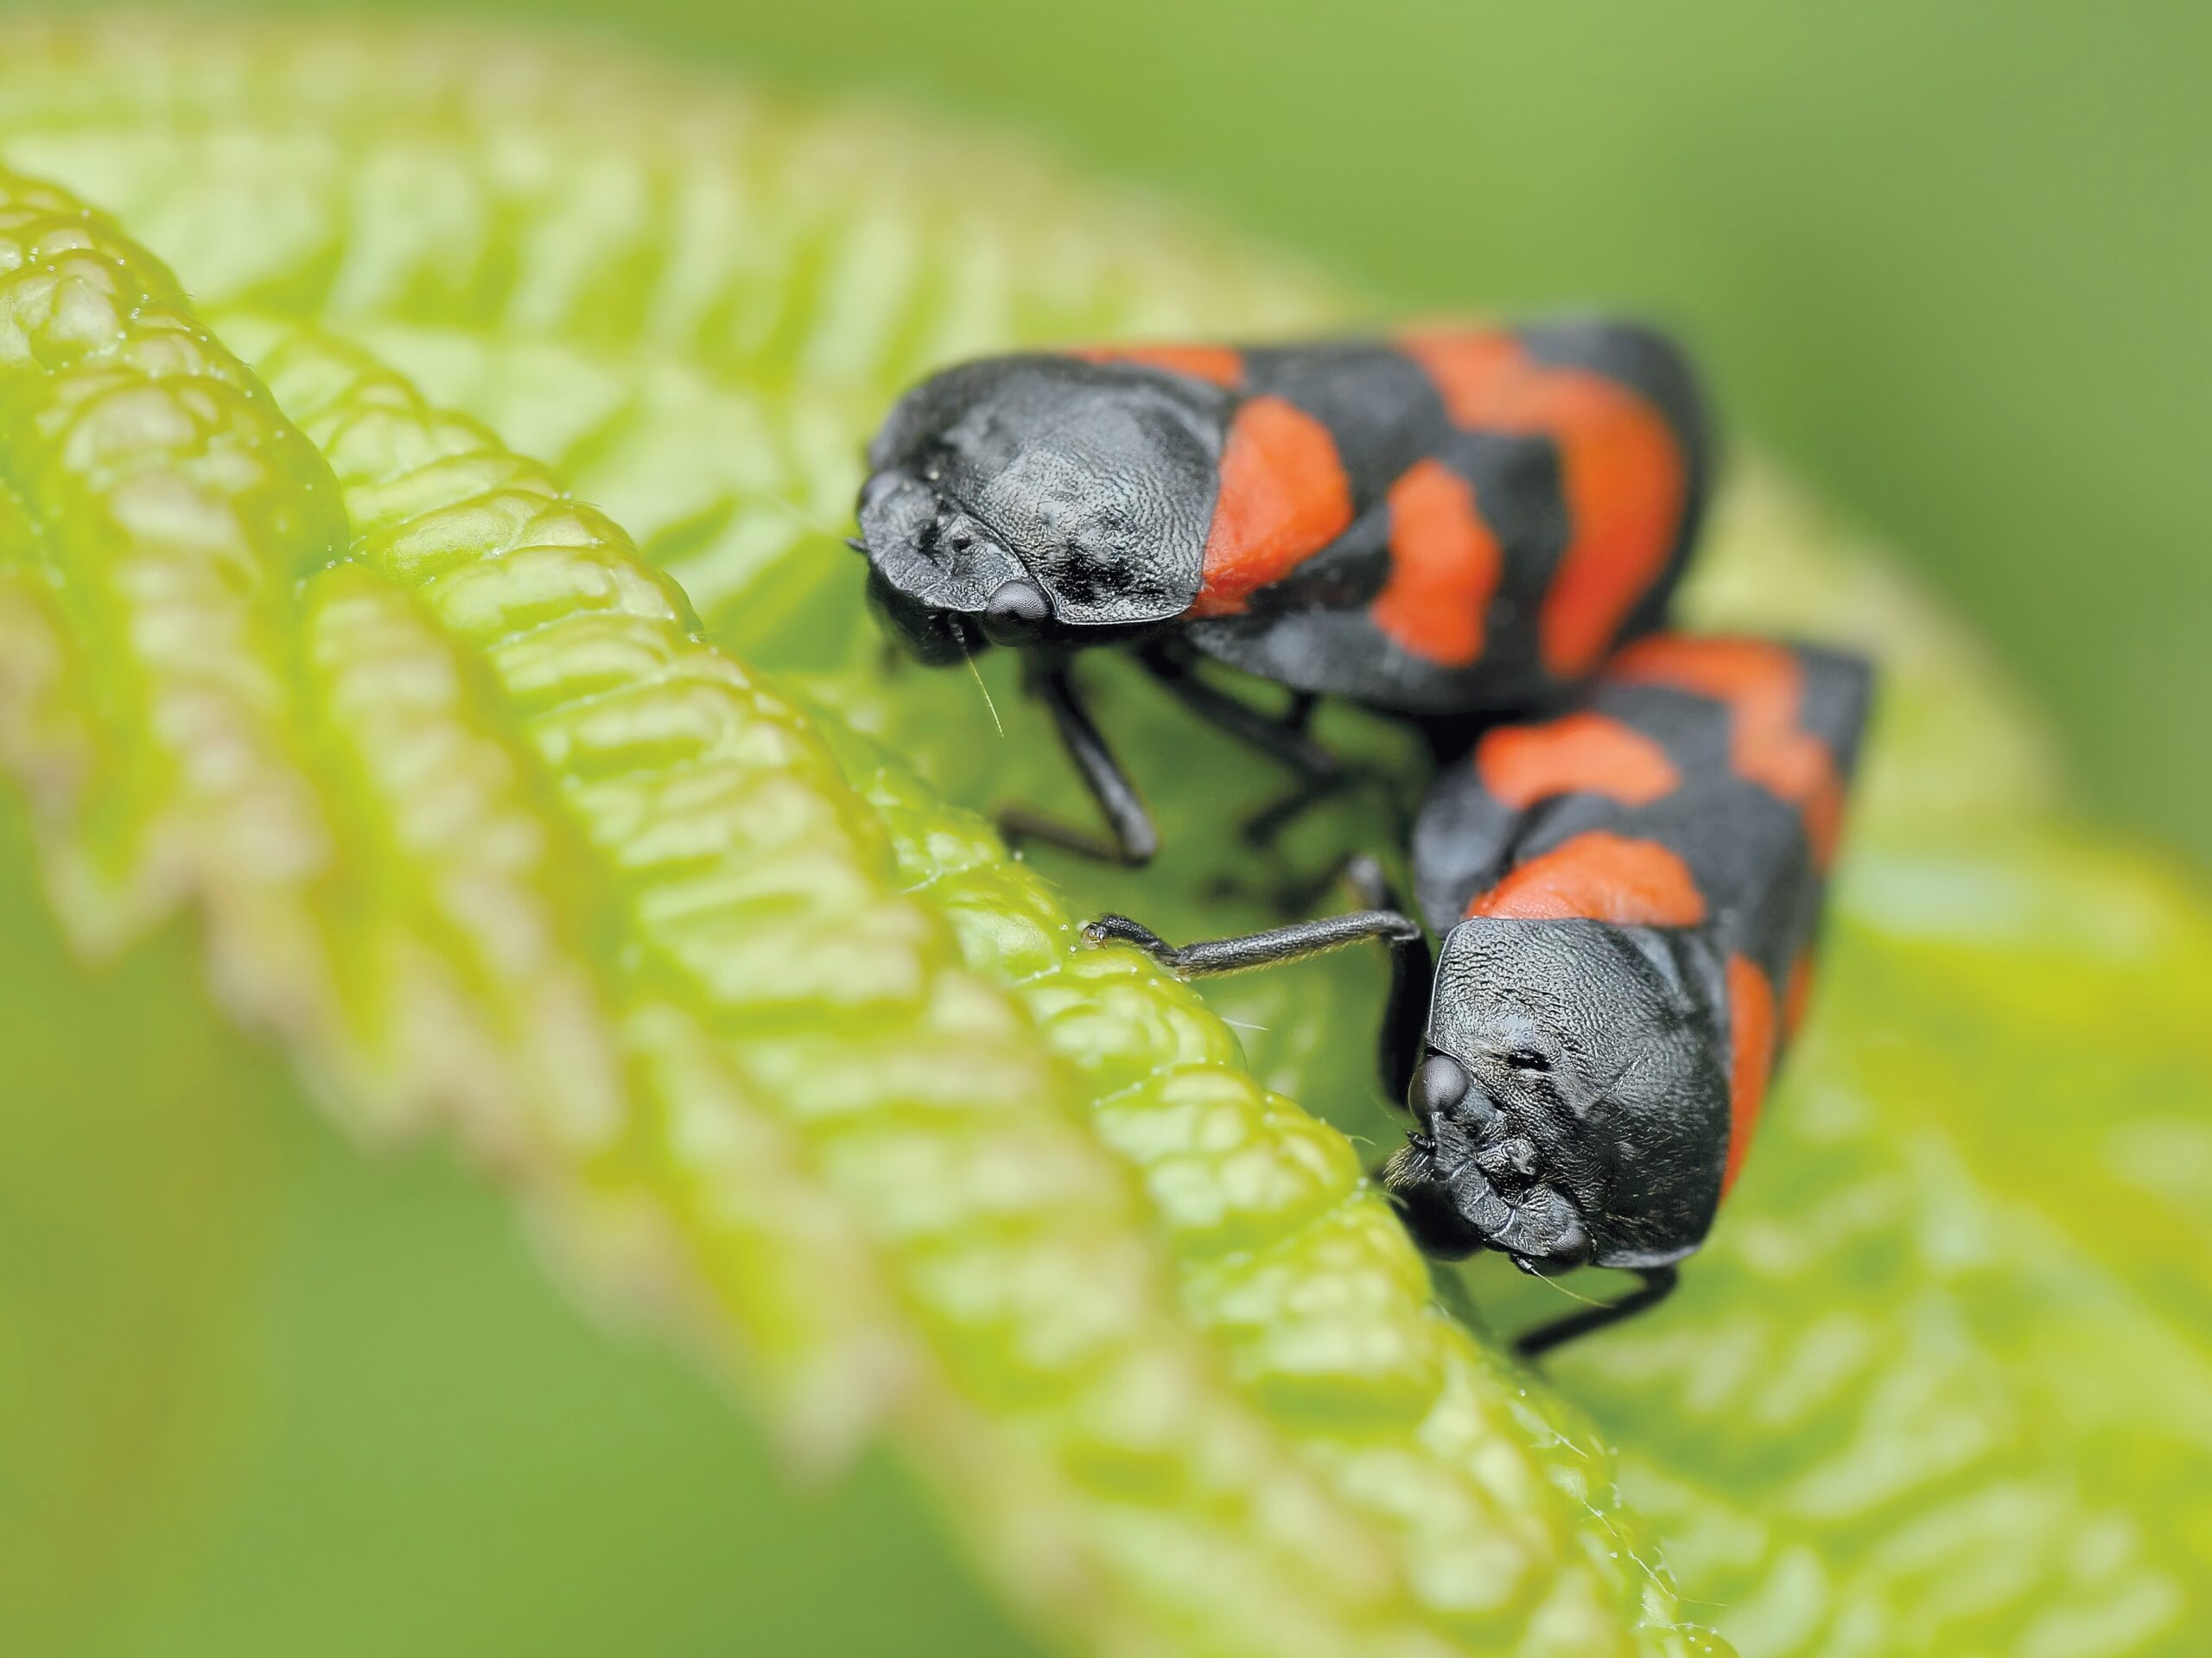 Rimedi naturali contro gli insetti: ecco le soluzioni